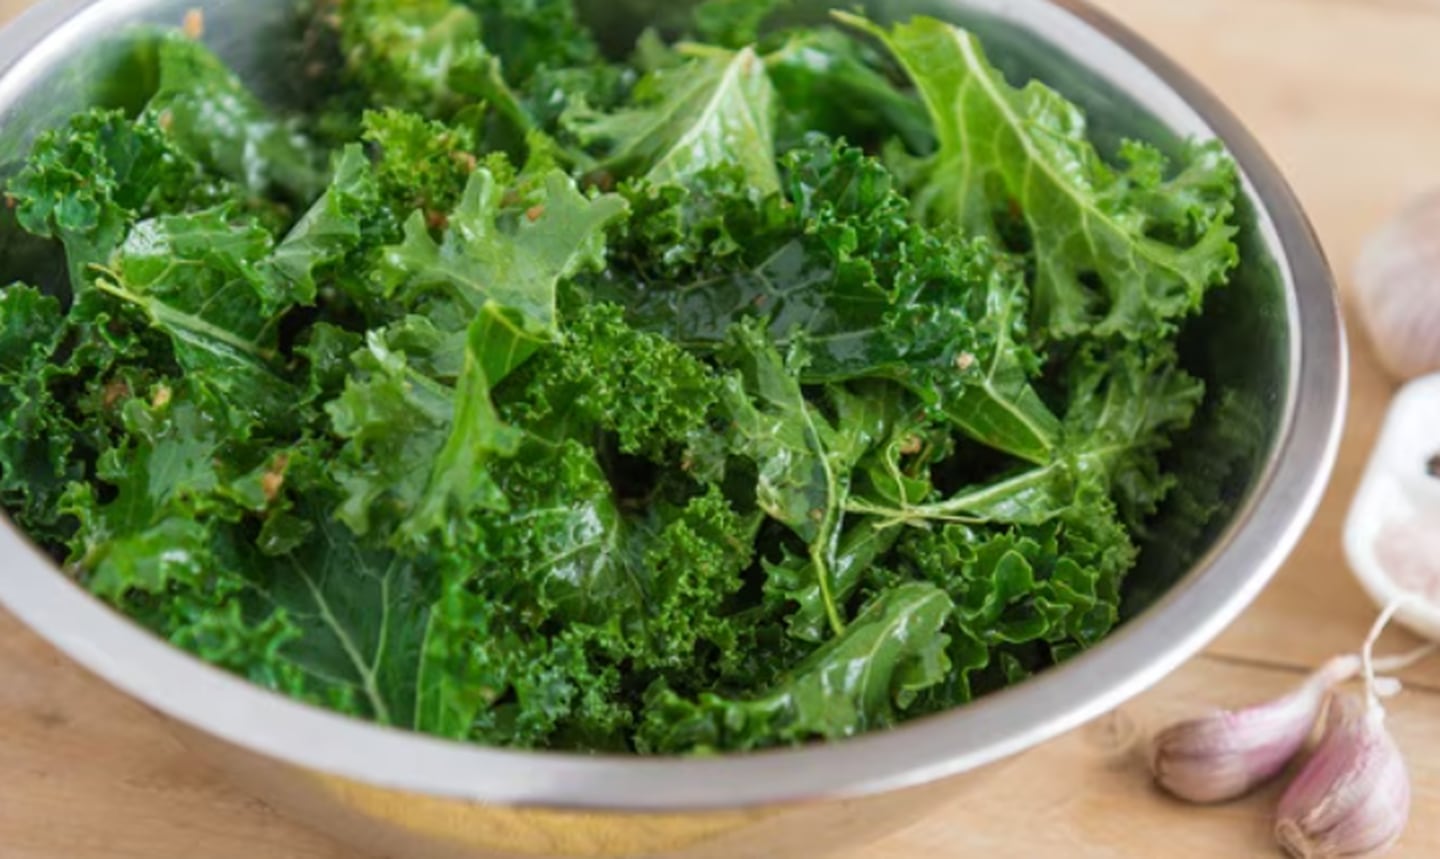 La col rizada, también conocida como kale, es una verdura rica en fibra, antioxidantes, calcio, vitaminas C y K, hierro y otros nutrientes esenciales para la salud. Foto: El Universal/GDA